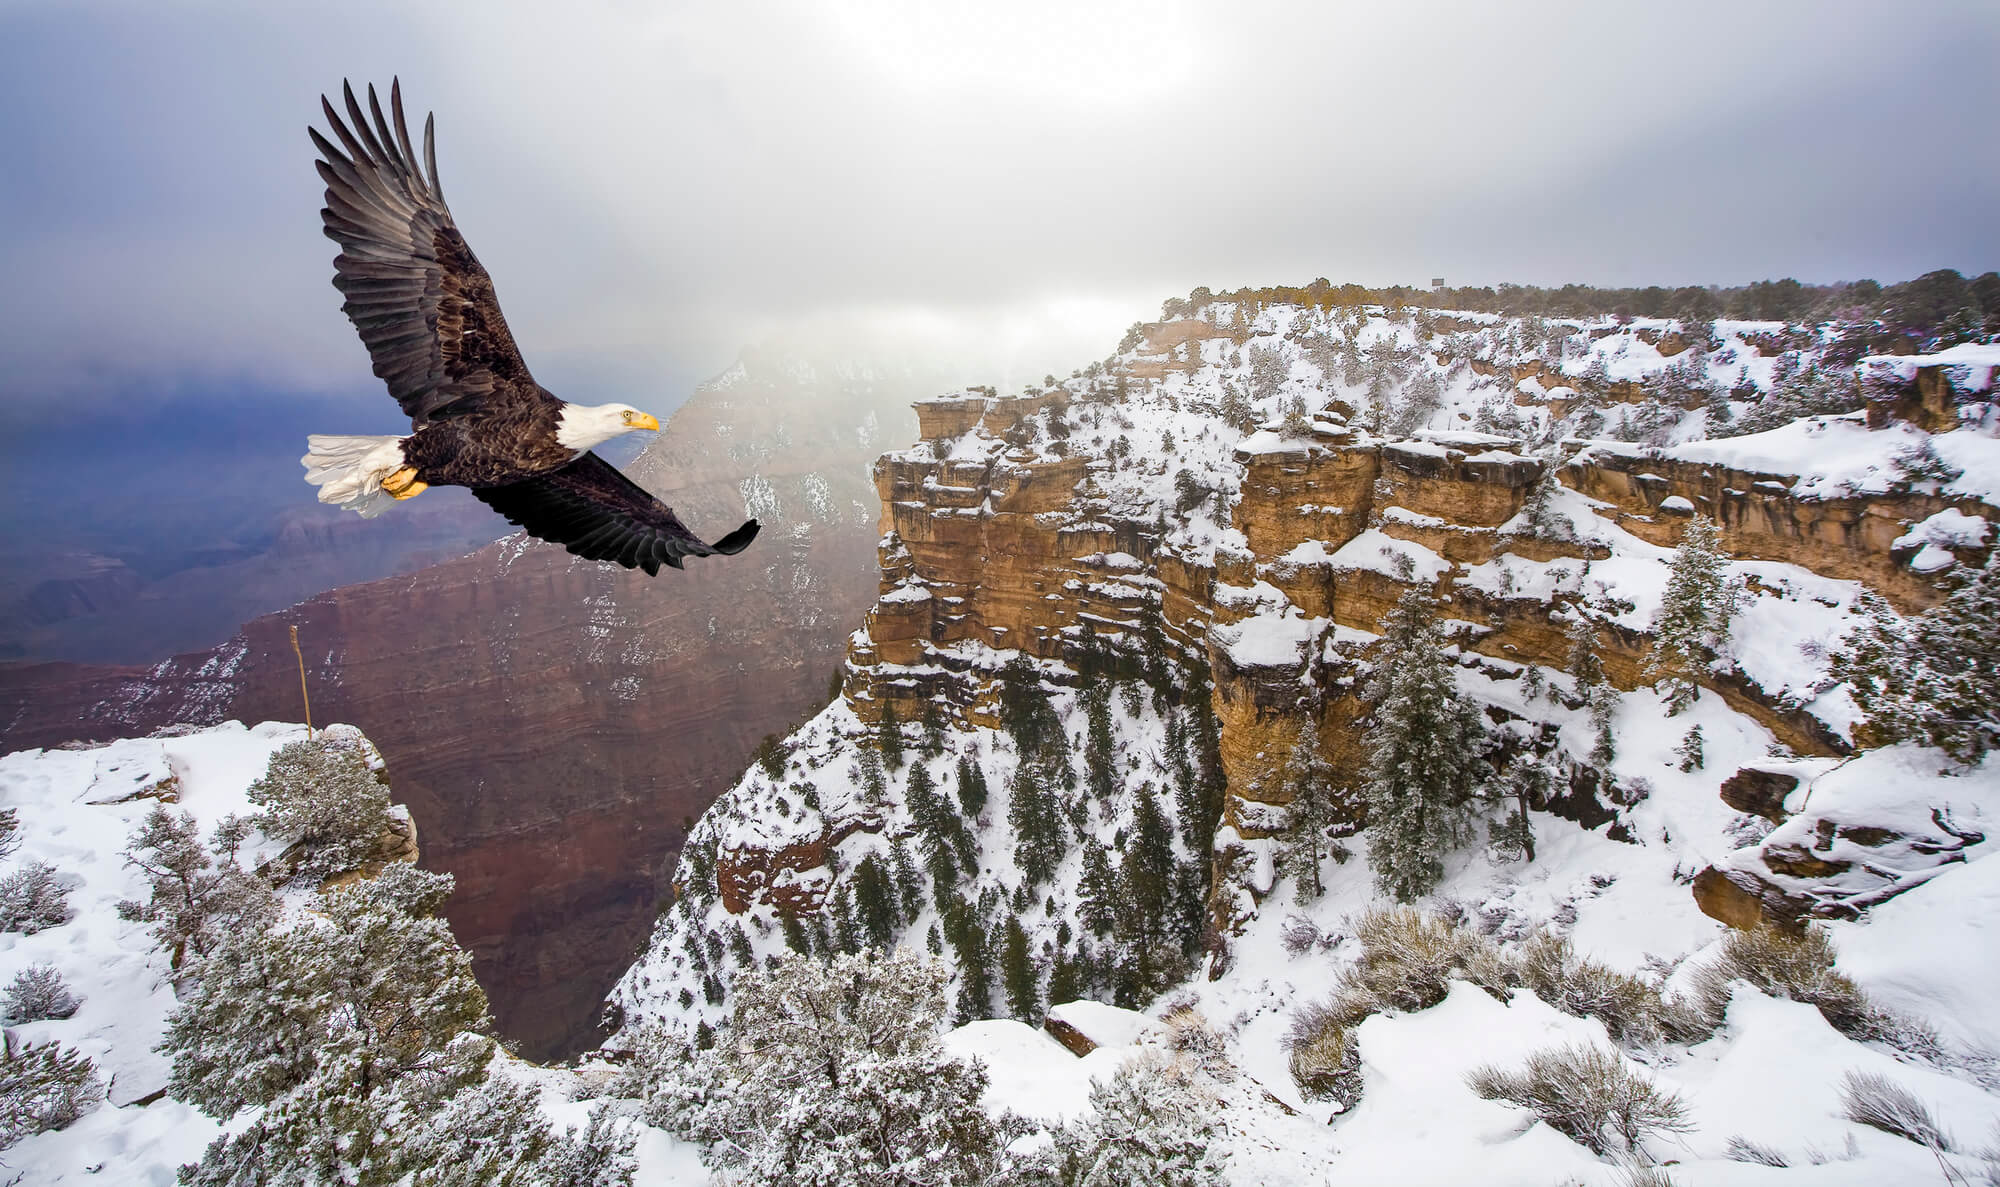 A bald eagle flies over a snowy Grand Canyon